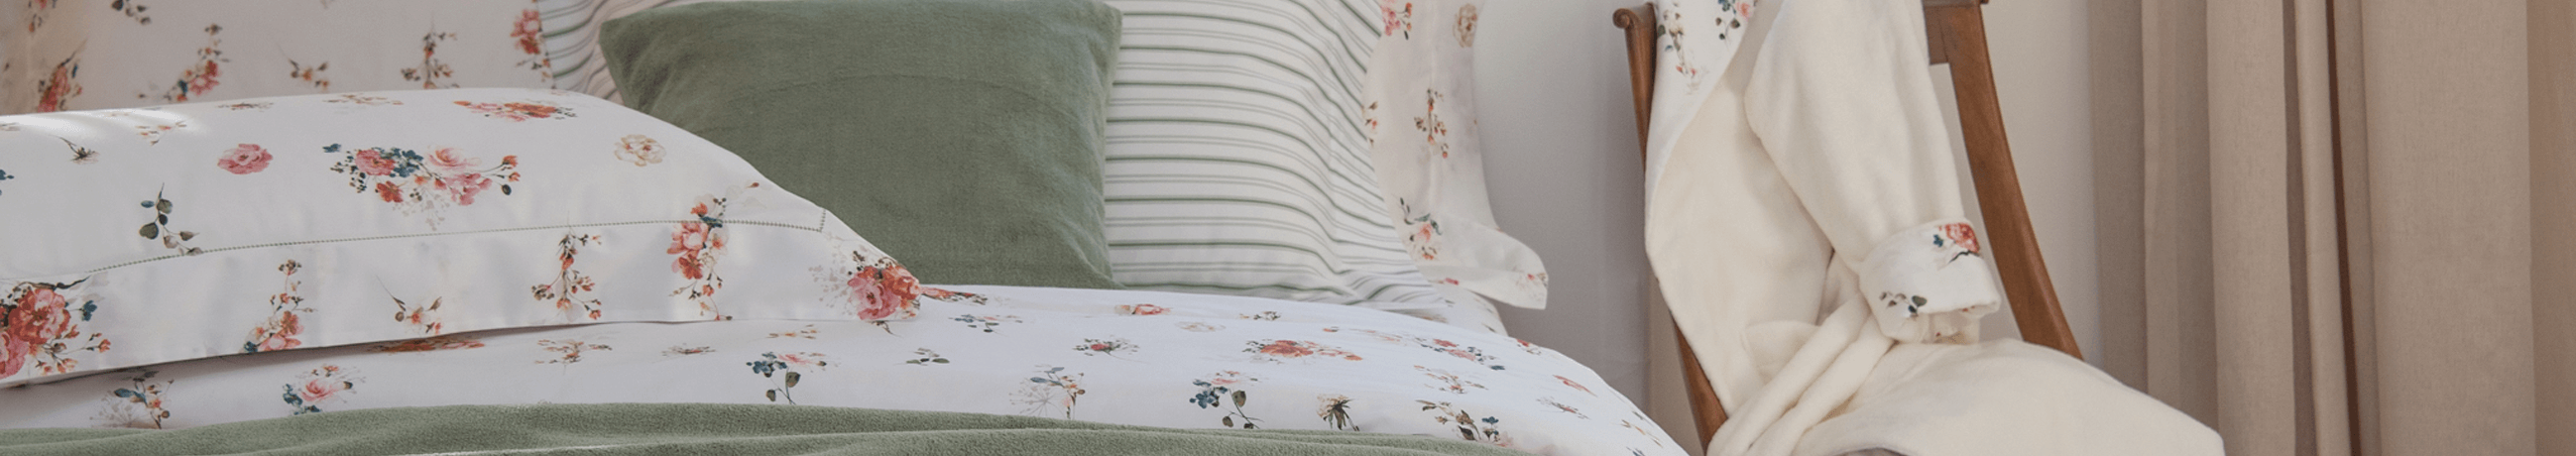 Peseiras de tricô para compor o decor de seu quarto e sua cama